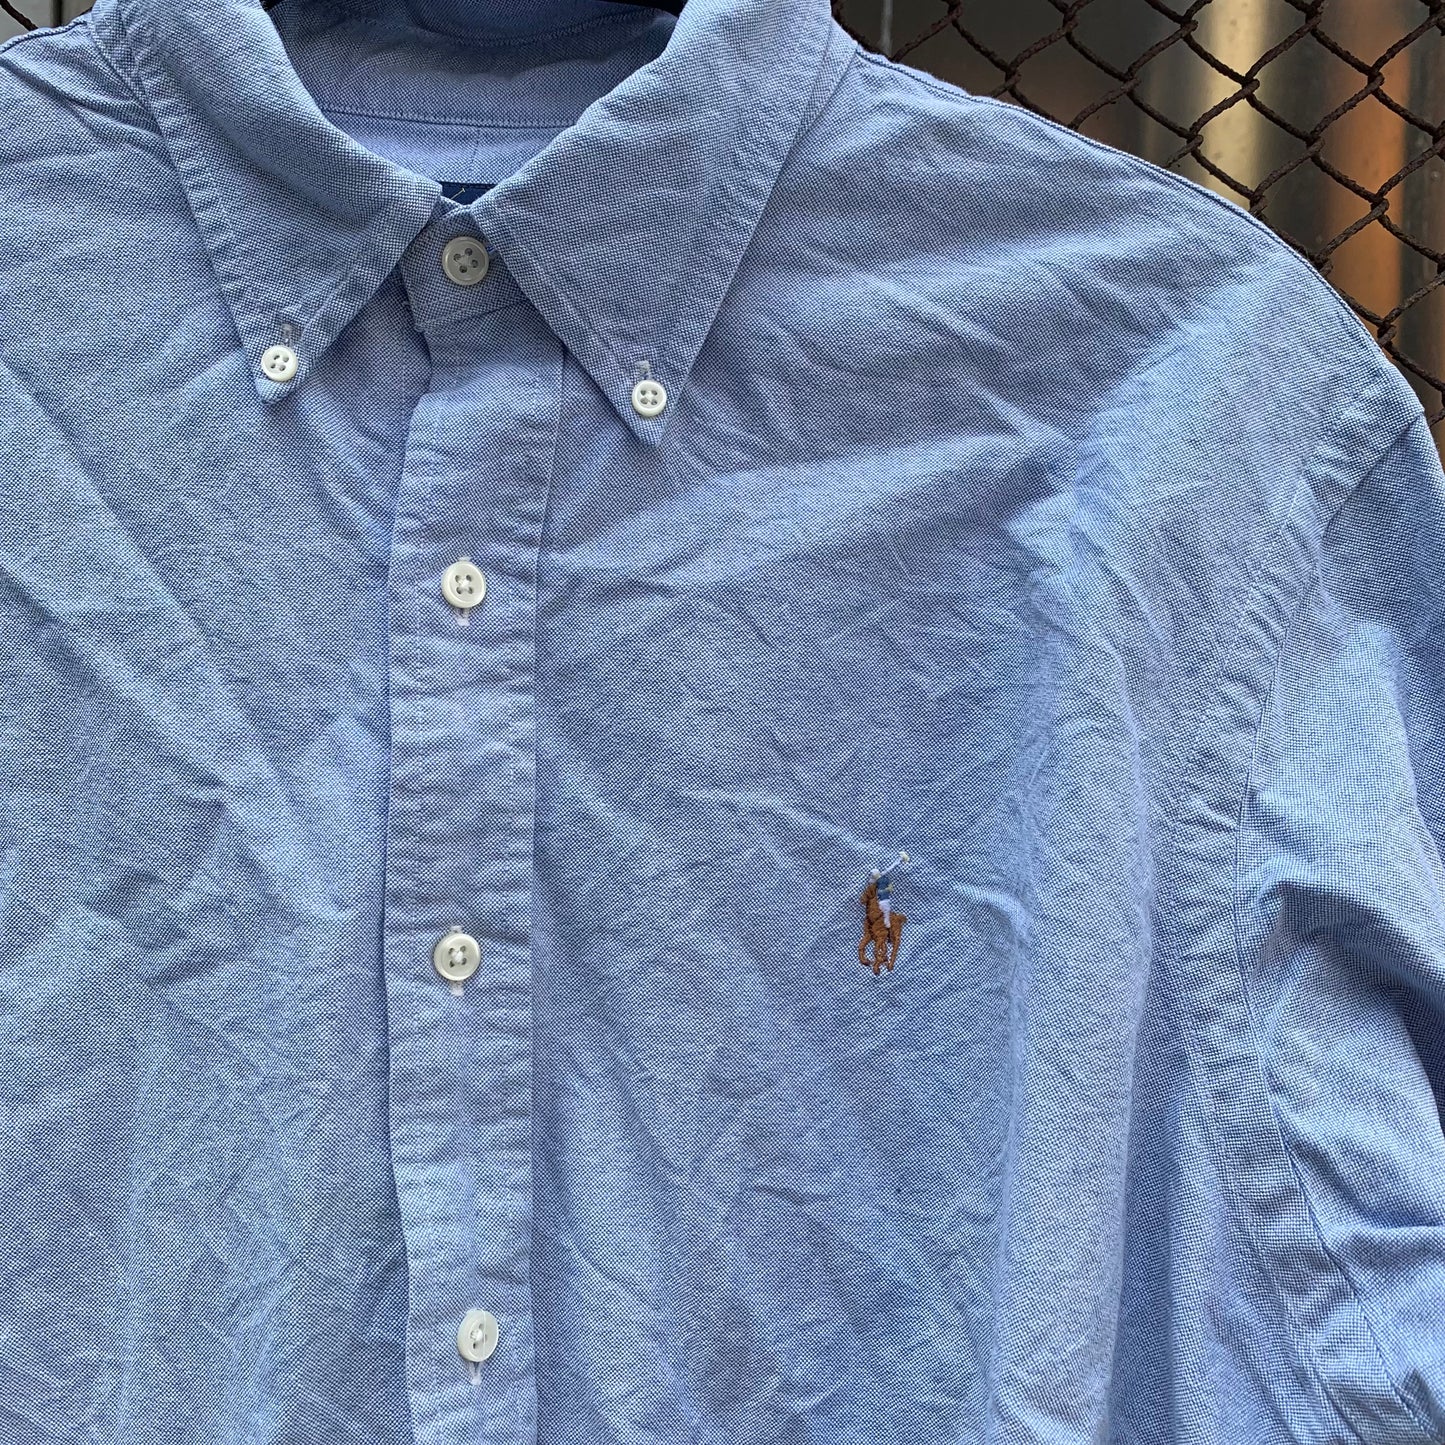 Plain Light Blue Ralph Lauren Shirt